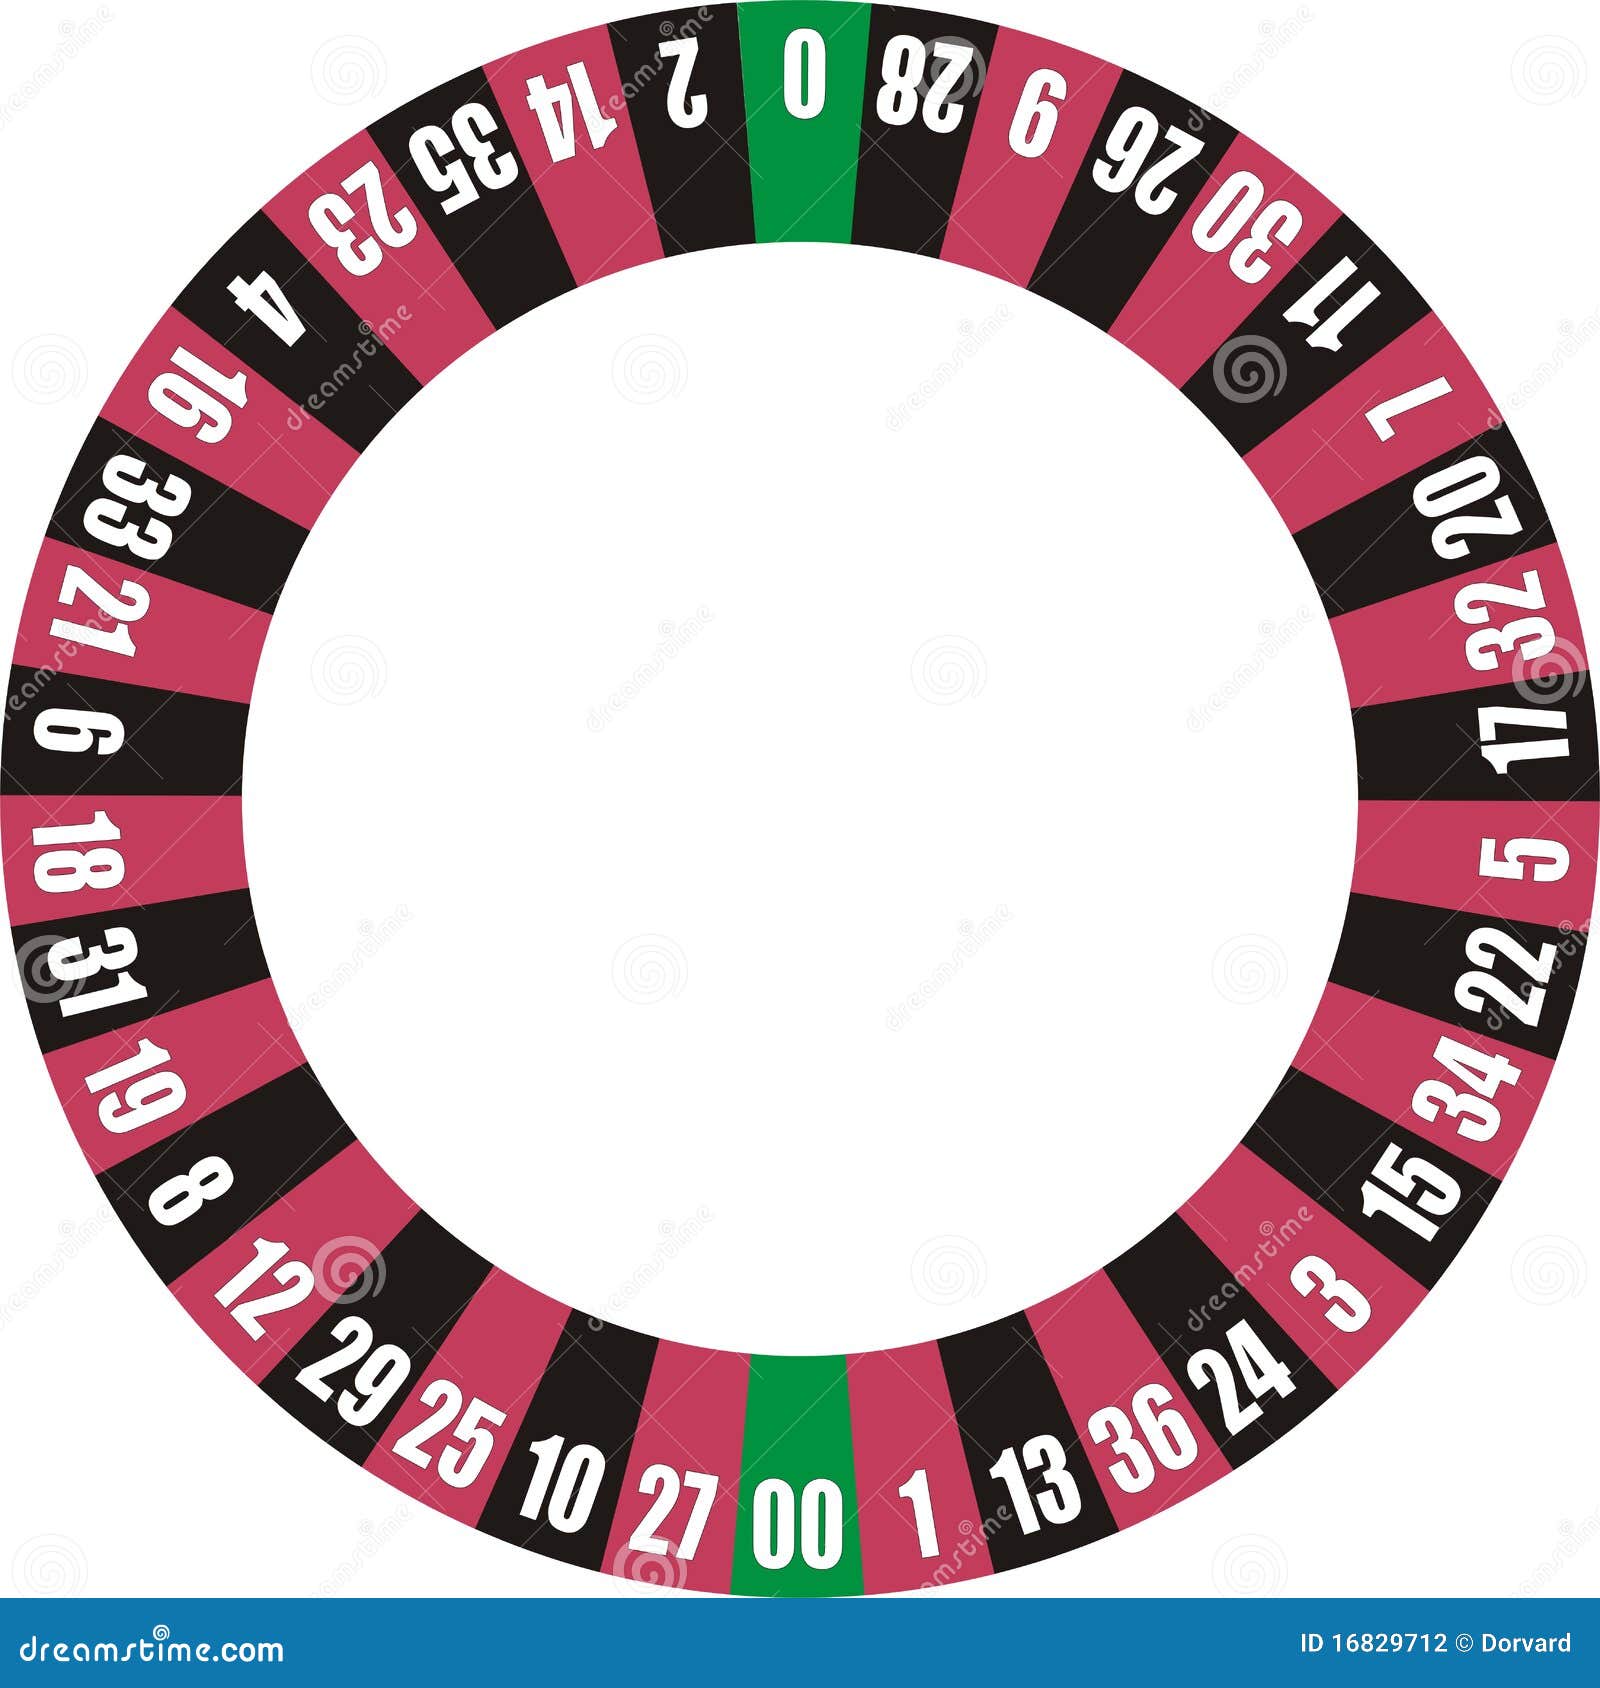 Doppio zero della rotella delle roulette. Rotella delle roulette con un doppio zero. Il programma di struttura nel vettore.